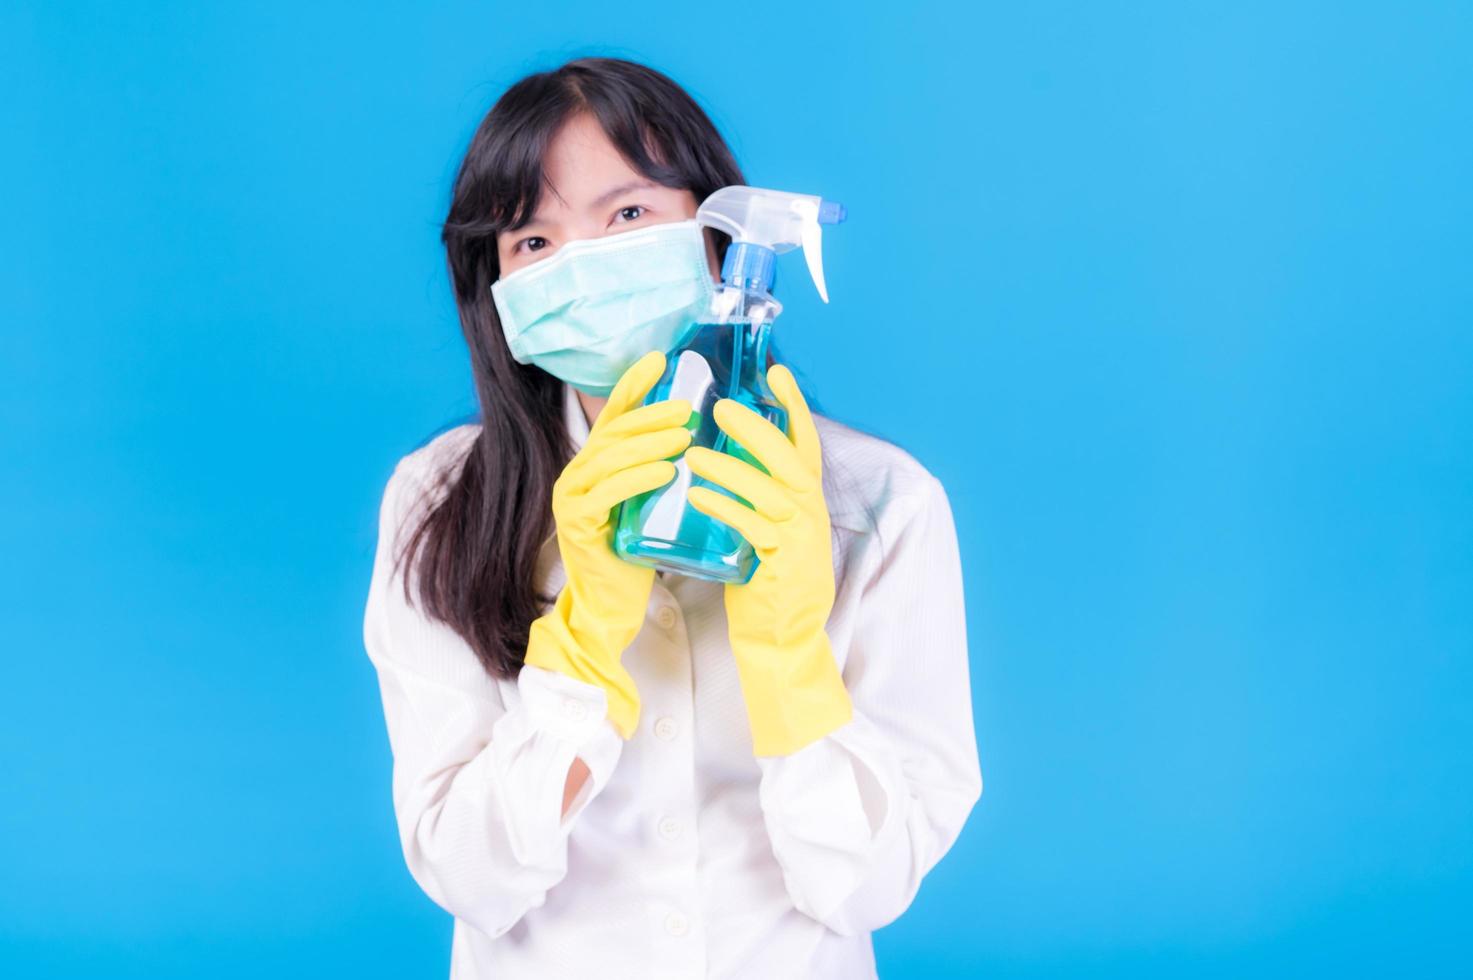 asiatische frauen müssen masken verwenden, um eine staubbelastung und eine infektion durch viren zu verhindern, die sich in der luft ausbreiten, indem sie mit alkoholspray gereinigt werden foto